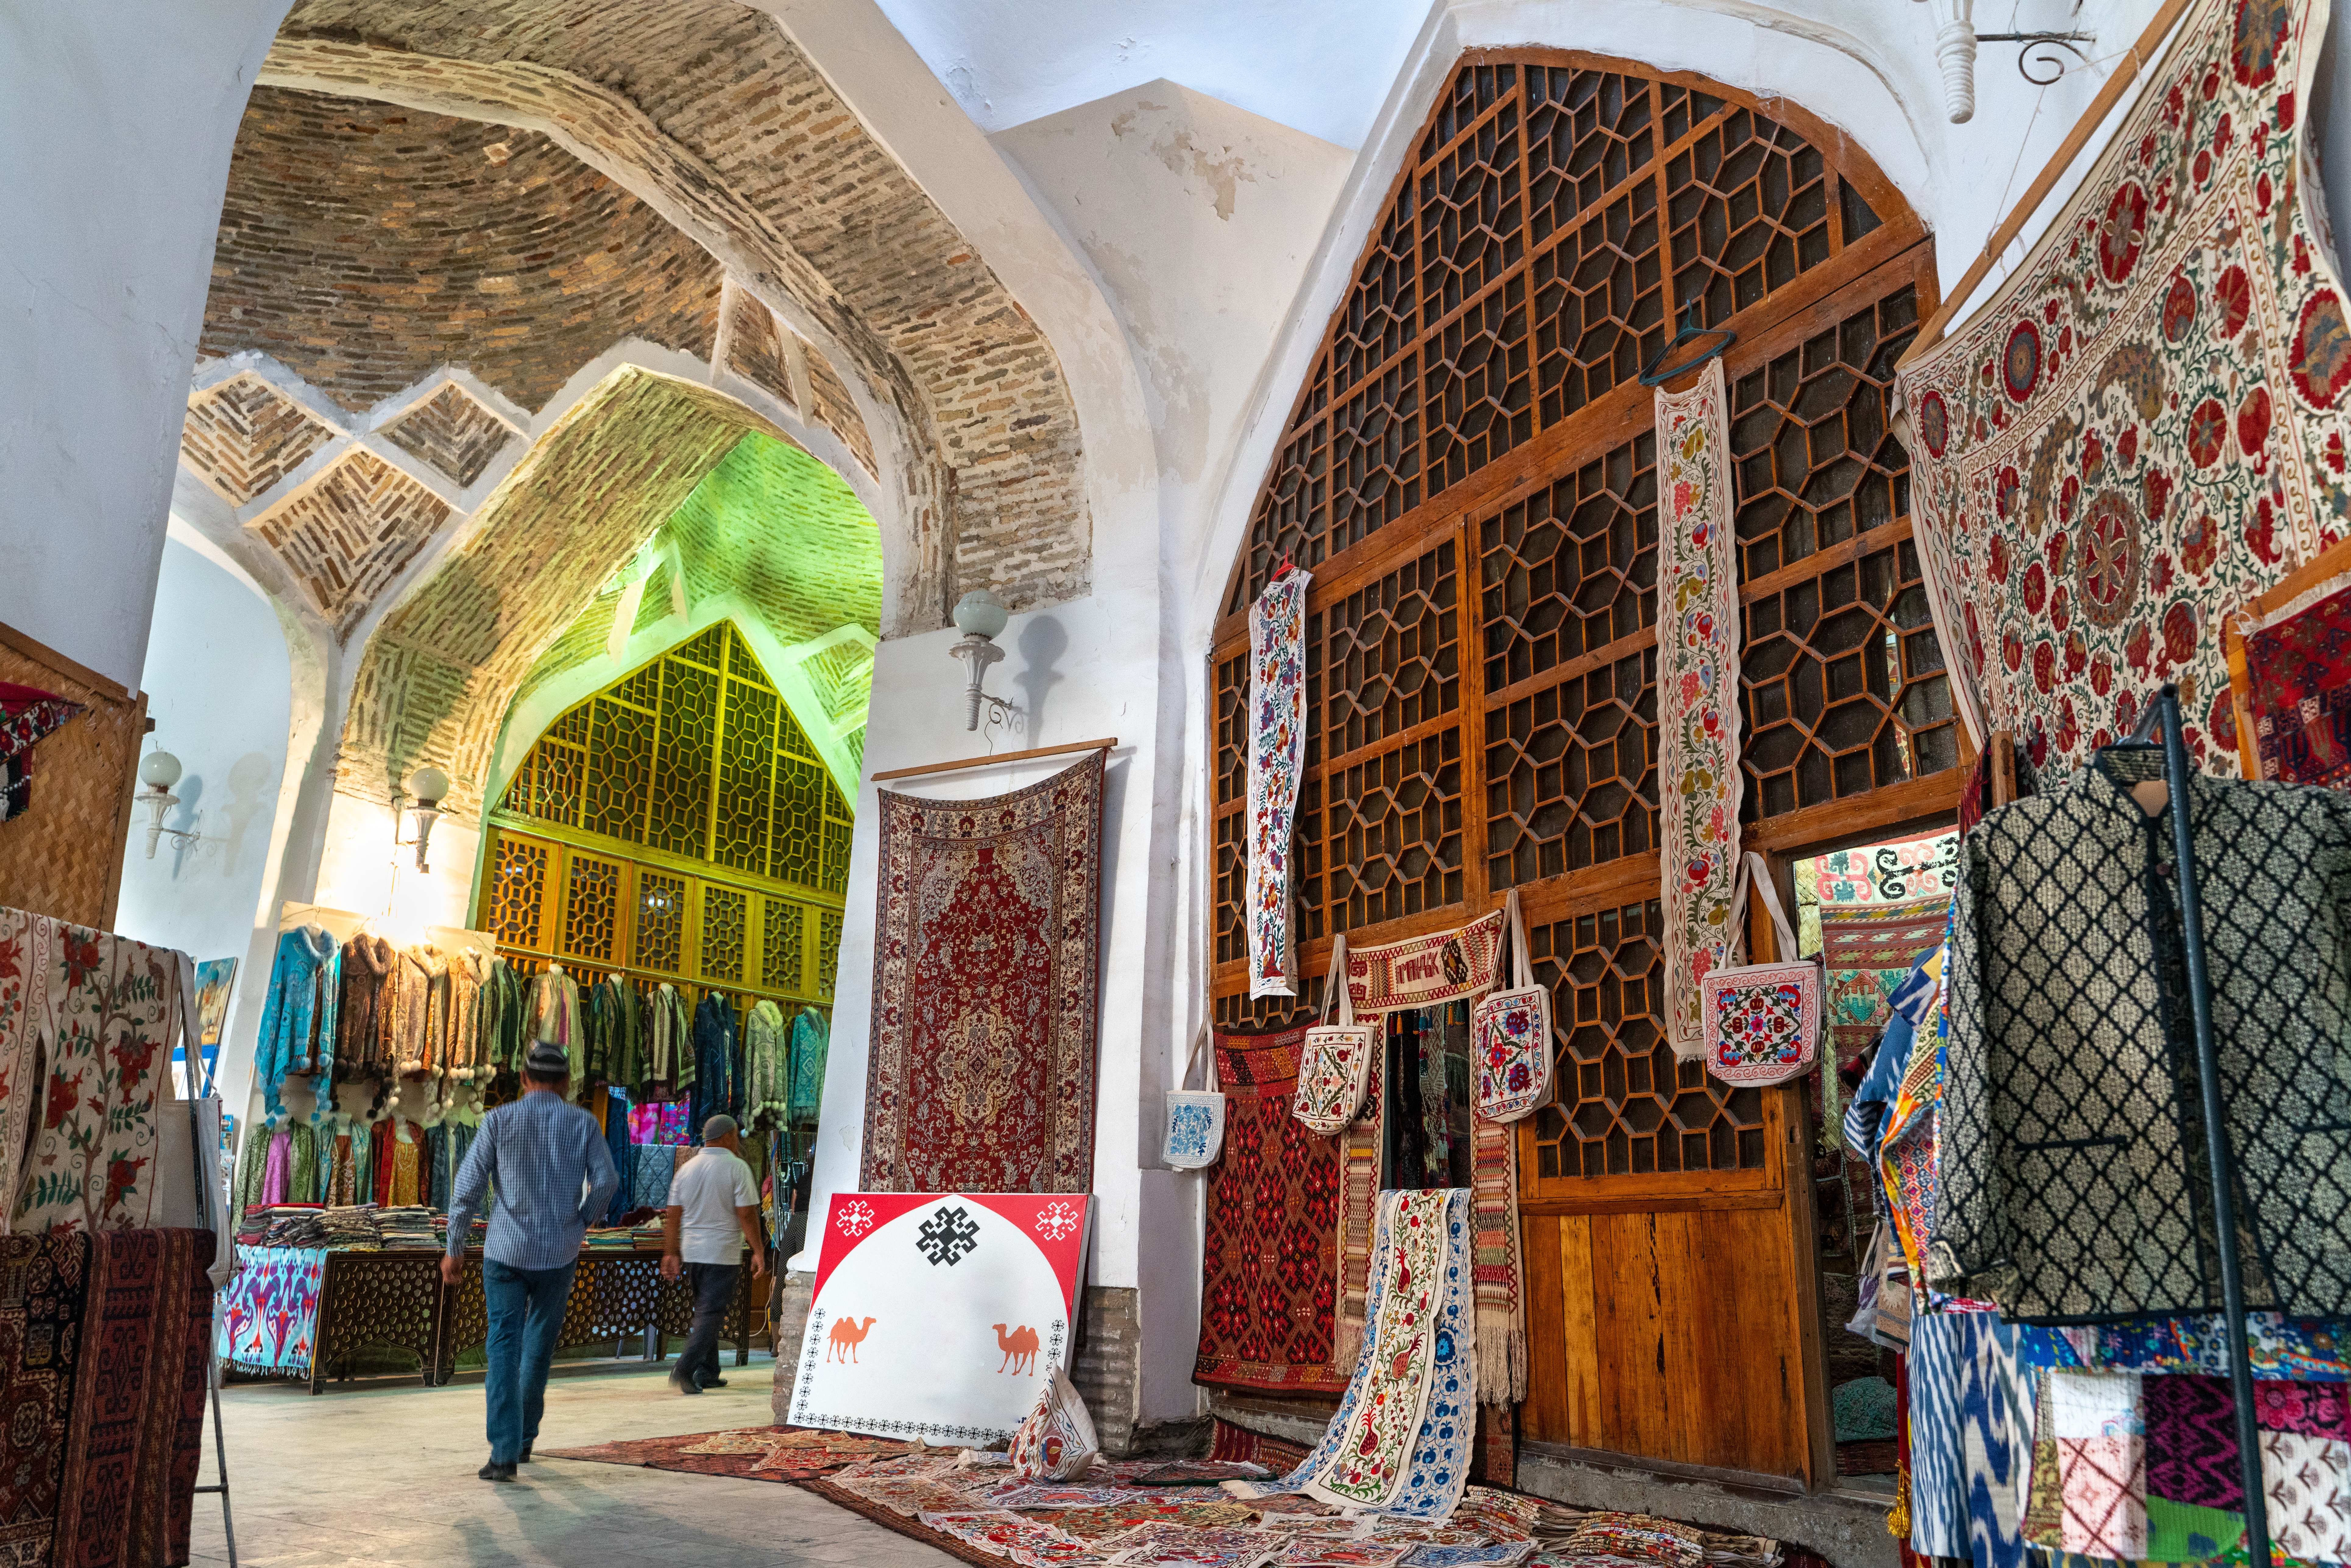 Old carpet covered market in Bukhara, Uzbekistan – © Nomad1988 / Shutterstock